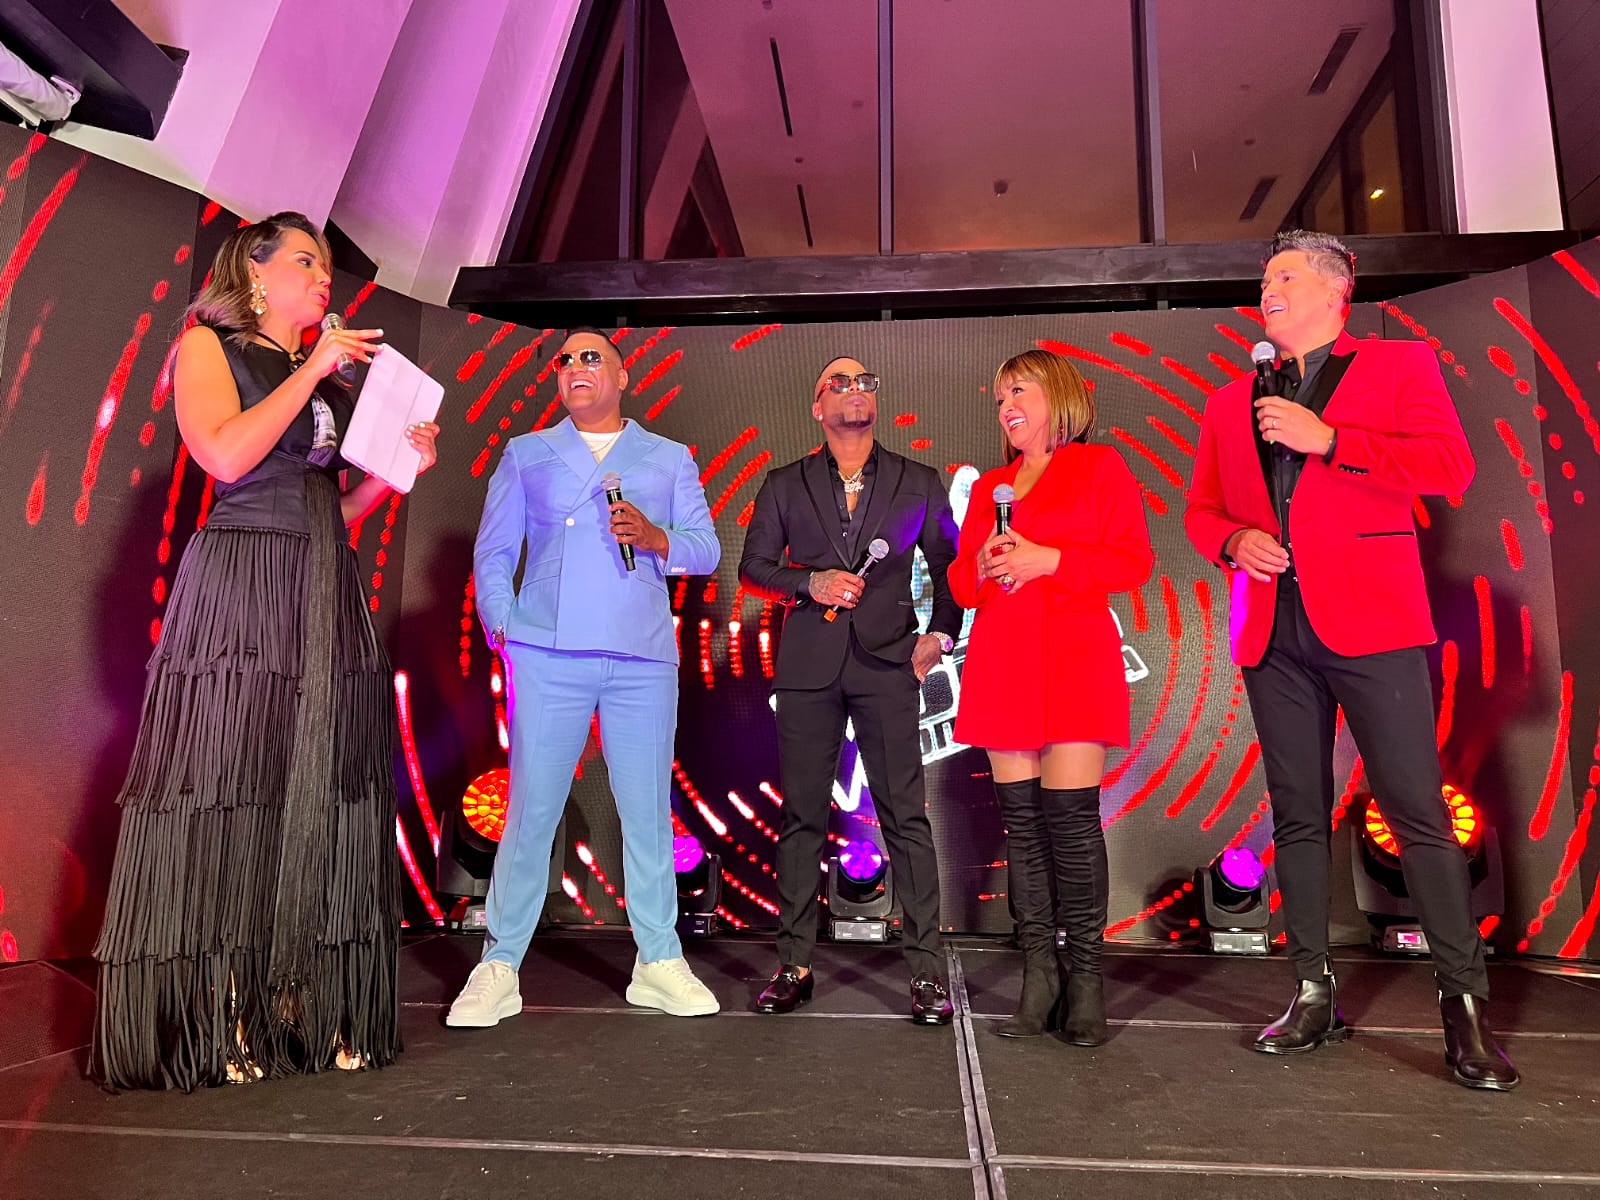 Lanzan la segunda temporada del programa The Voice Dominicana